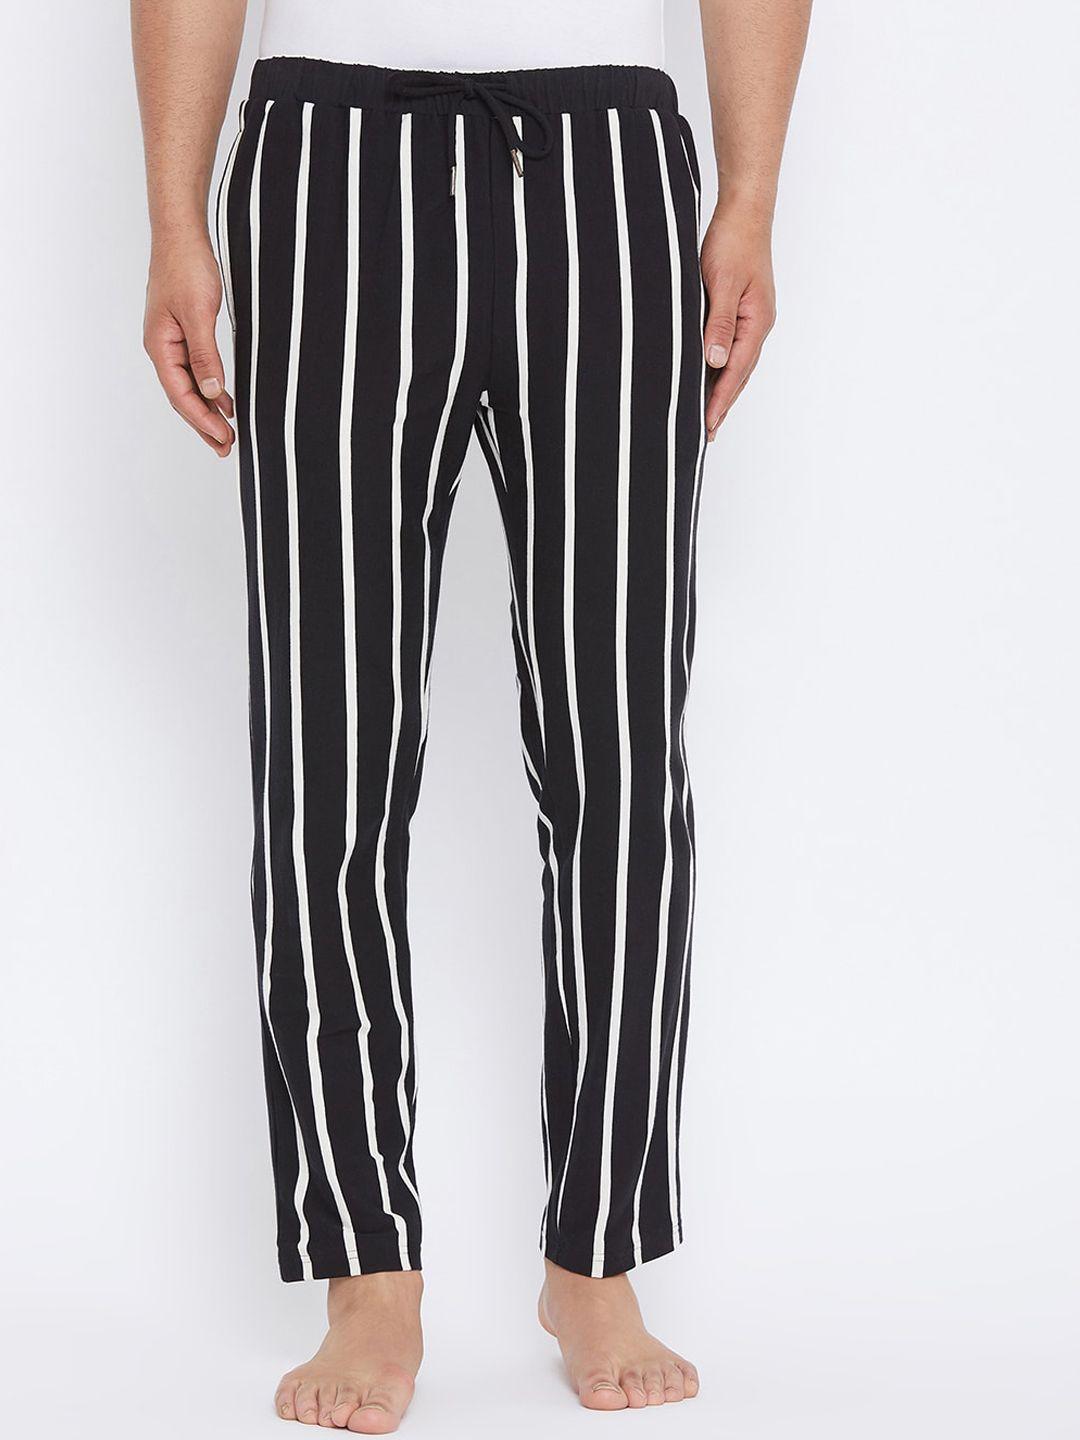 hypernation mens black & white striped cotton lounge pants